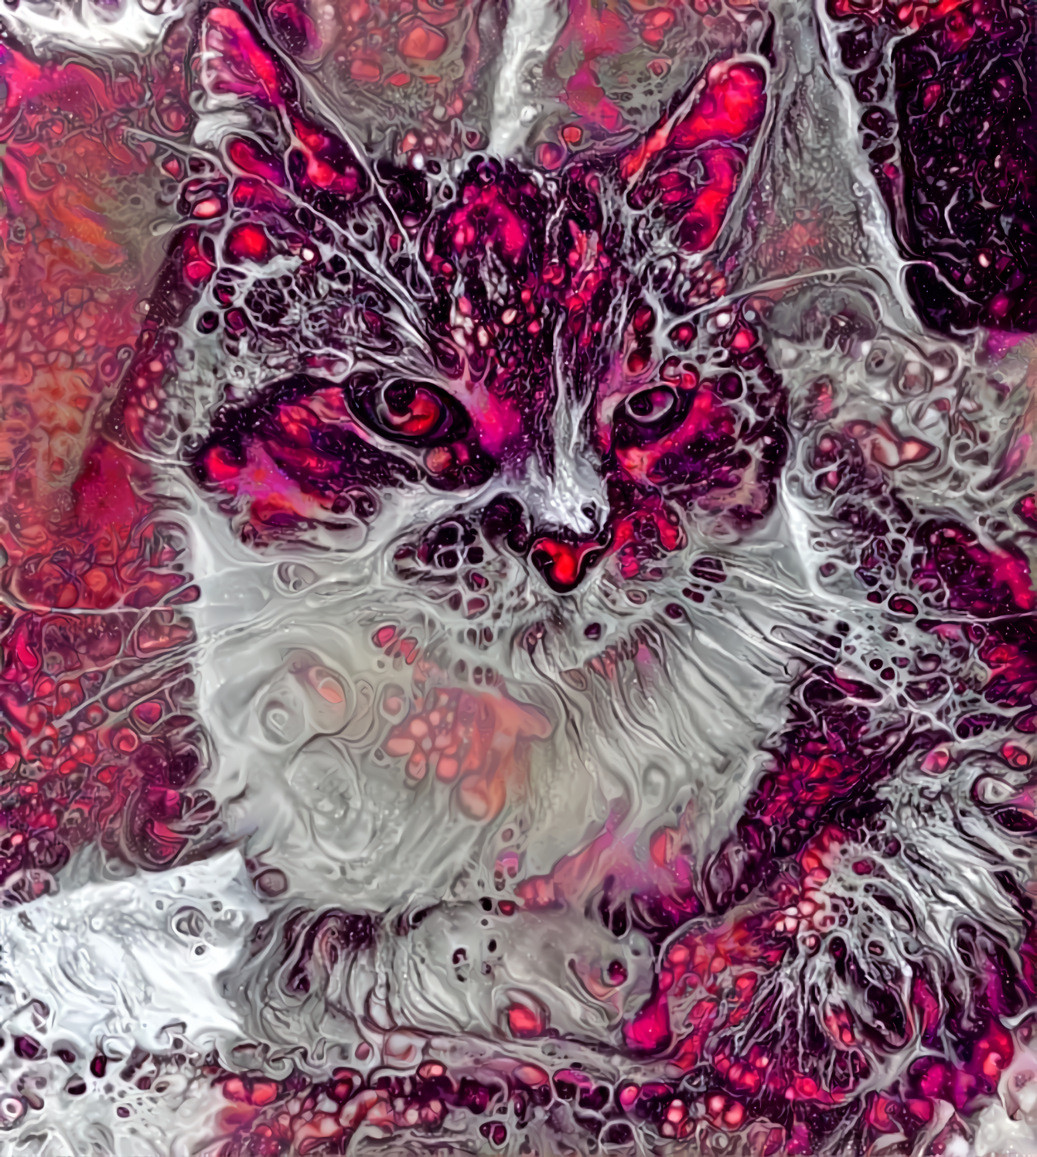 Enhanced & recolored: https://www.deviantart.com/chazcartier/art/Mouse-2-869745219